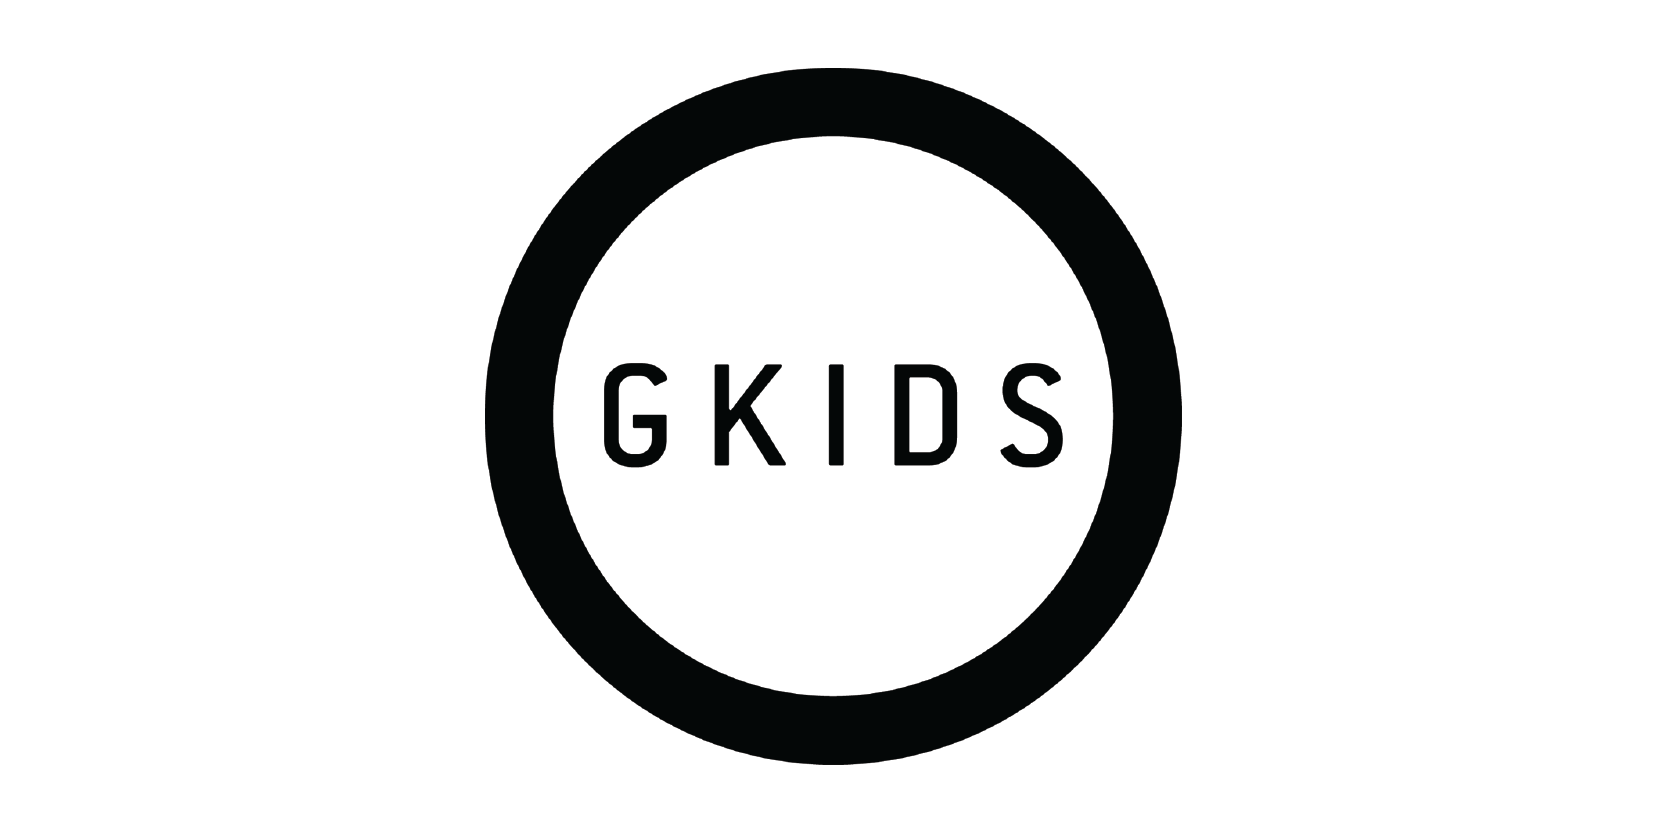 GKids